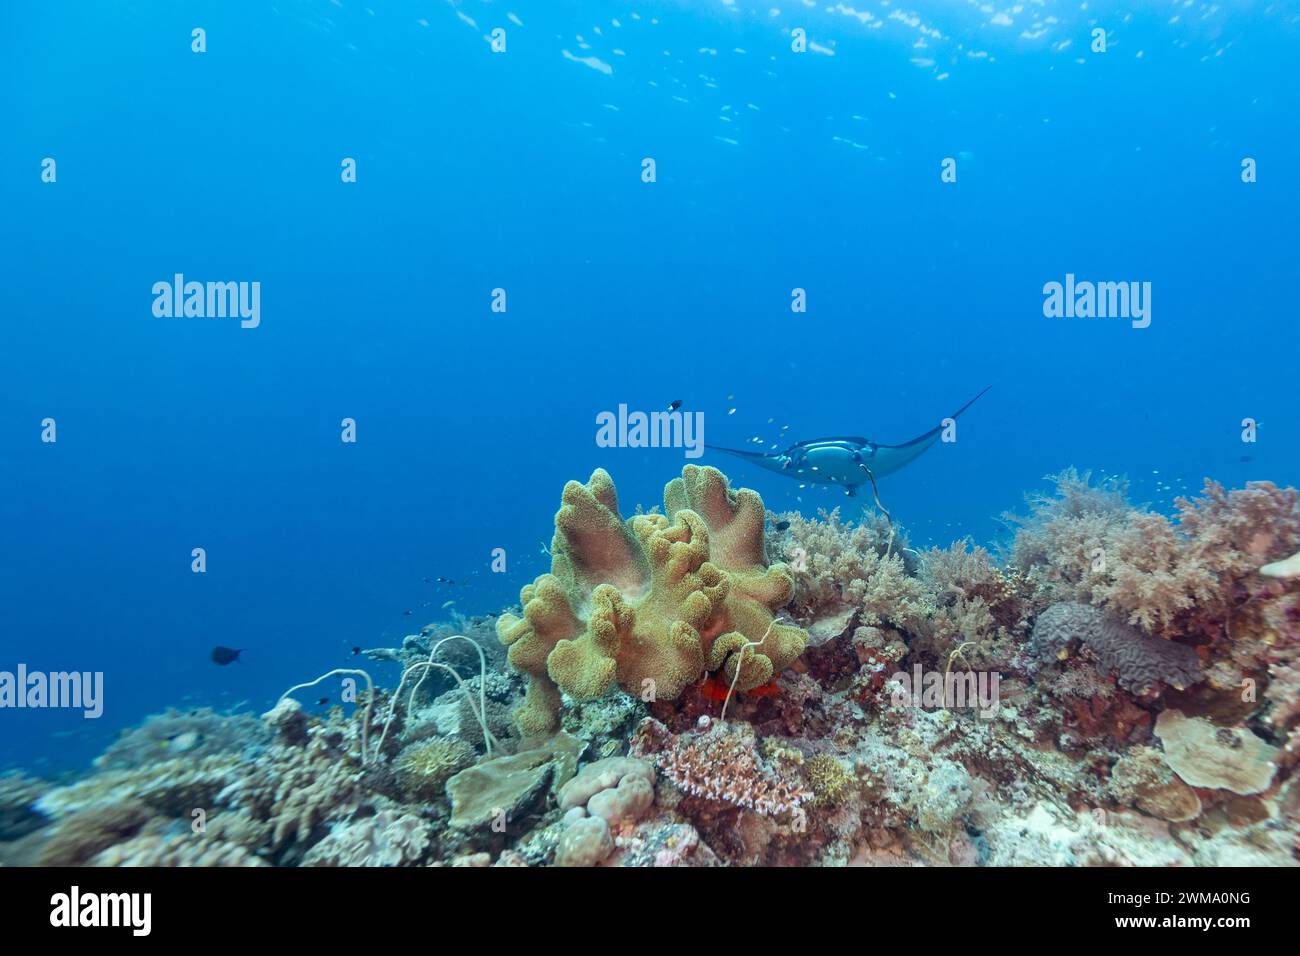 Manta ray, Mobula alfredi, nuota o vola attraverso le acque cristalline dell'oceano Foto Stock